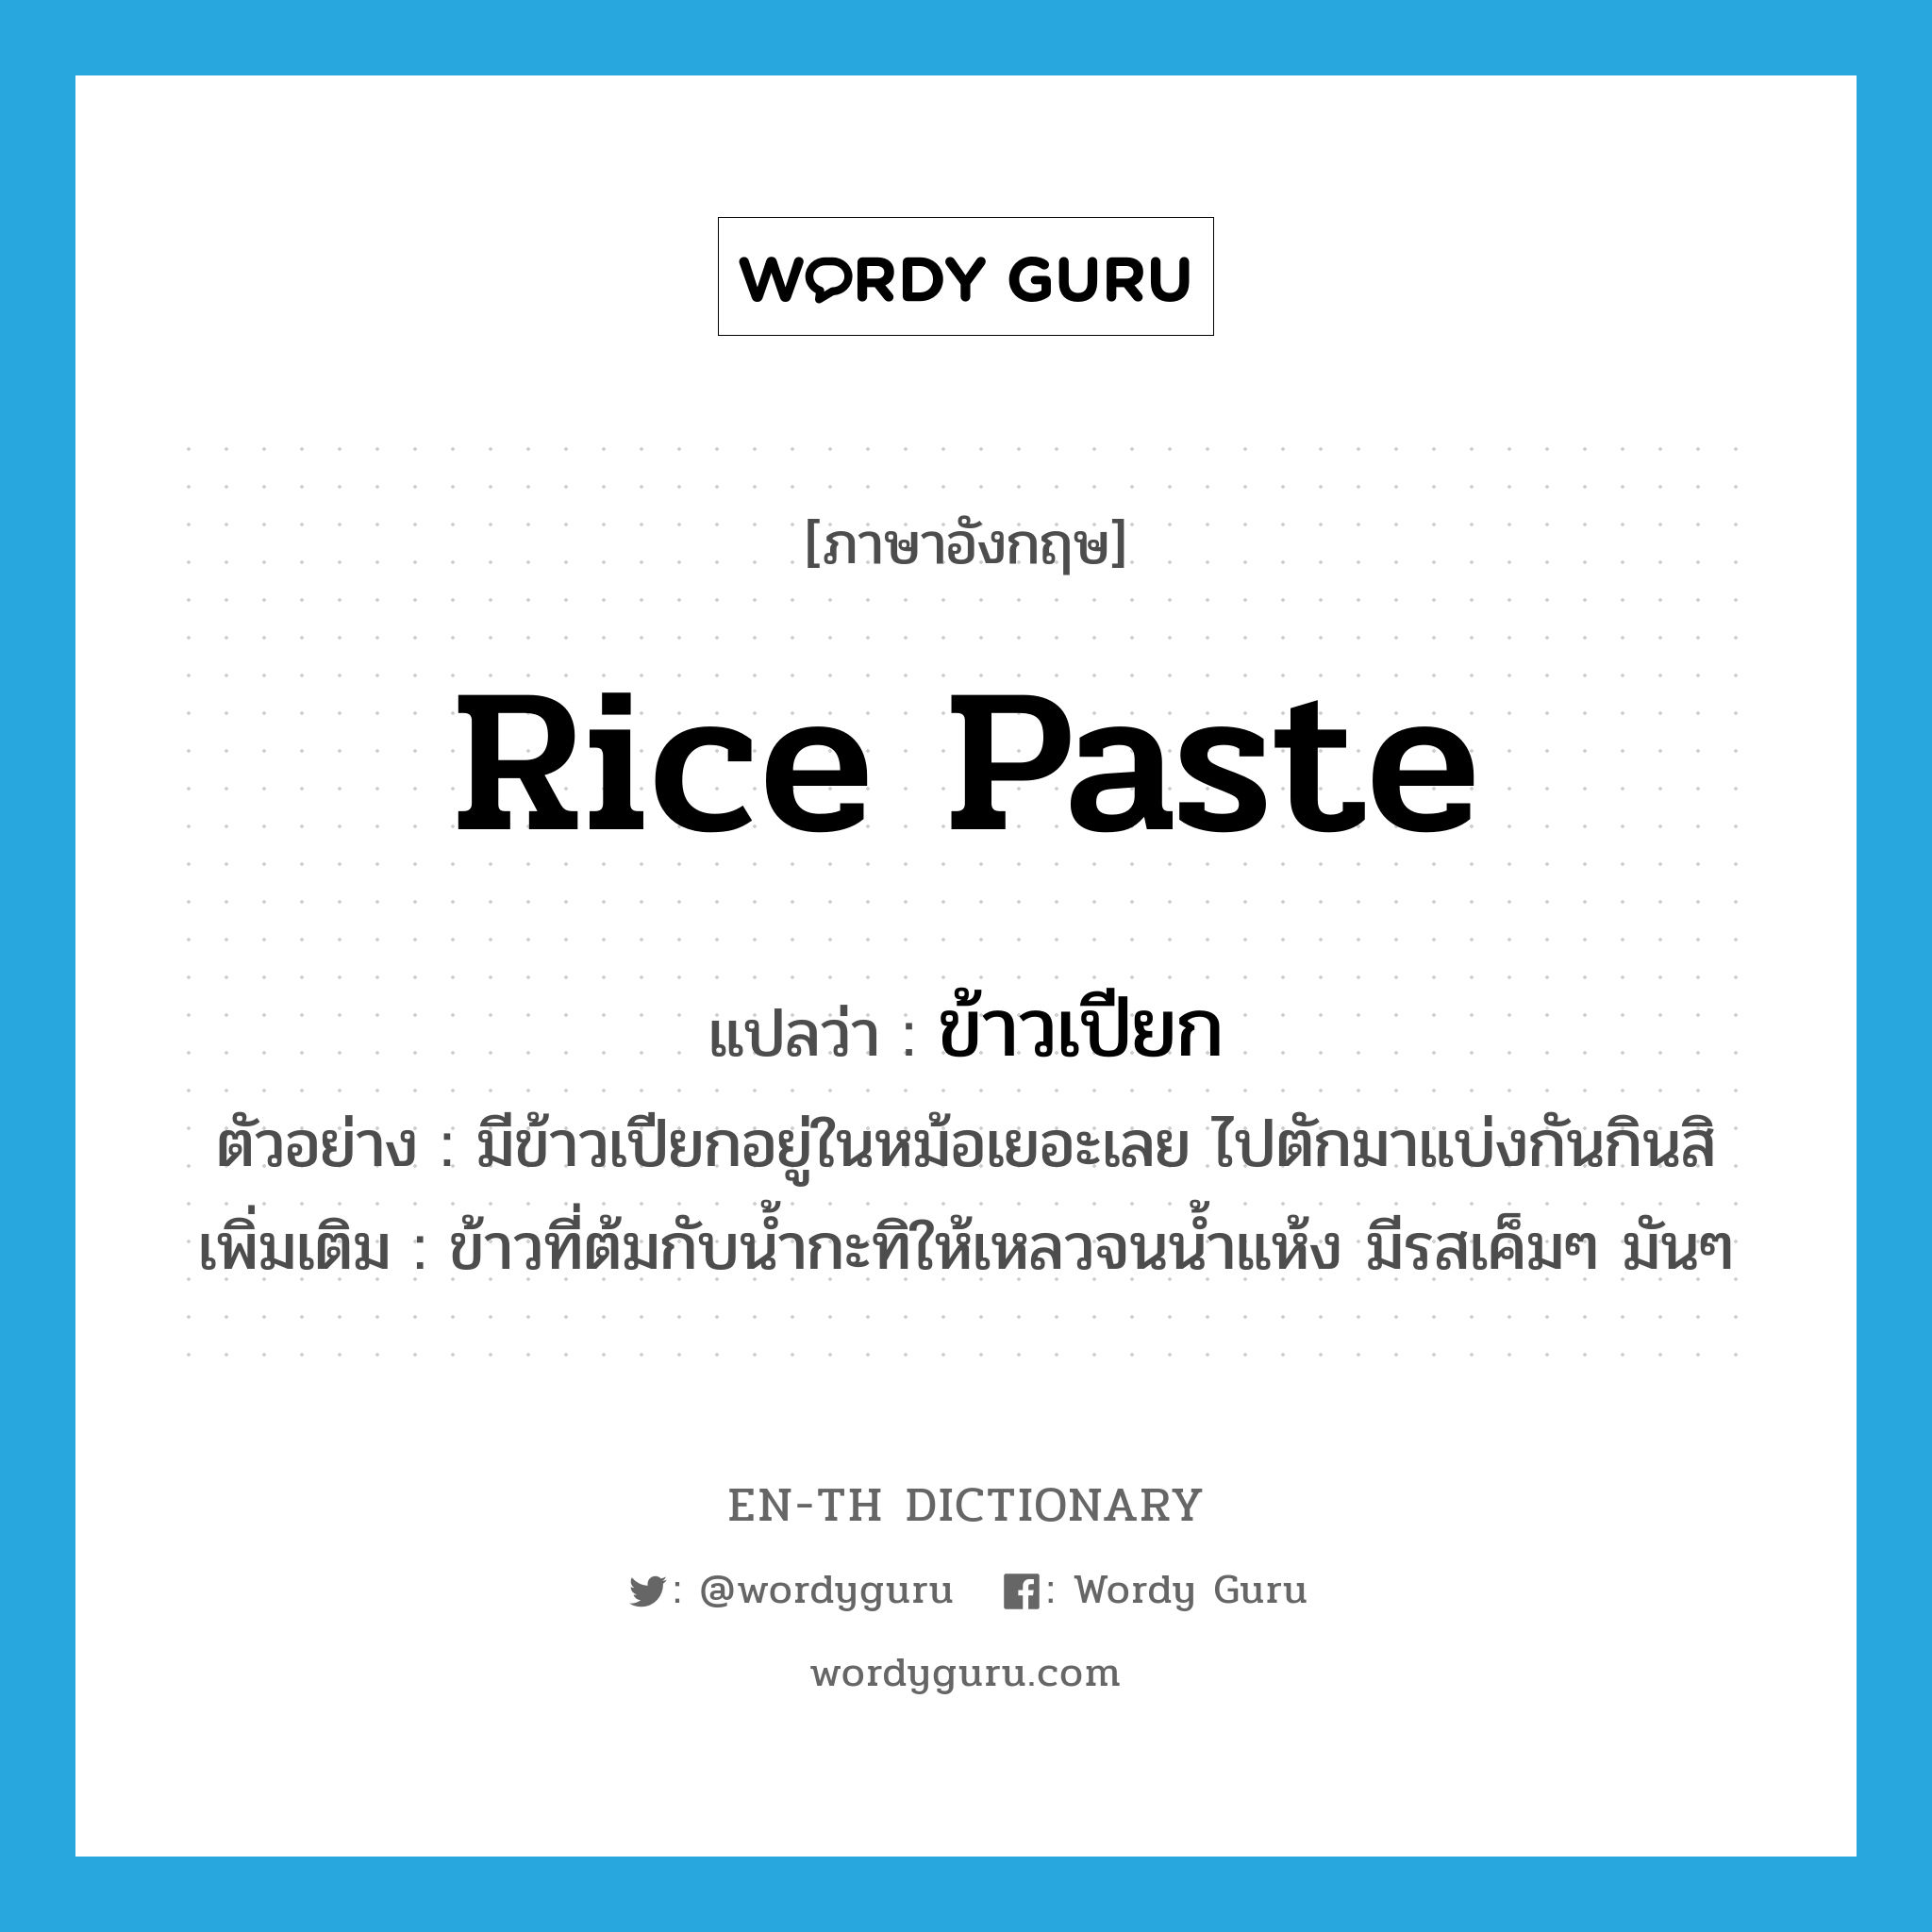 rice paste แปลว่า?, คำศัพท์ภาษาอังกฤษ rice paste แปลว่า ข้าวเปียก ประเภท N ตัวอย่าง มีข้าวเปียกอยู่ในหม้อเยอะเลย ไปตักมาแบ่งกันกินสิ เพิ่มเติม ข้าวที่ต้มกับน้ำกะทิให้เหลวจนน้ำแห้ง มีรสเค็มๆ มันๆ หมวด N